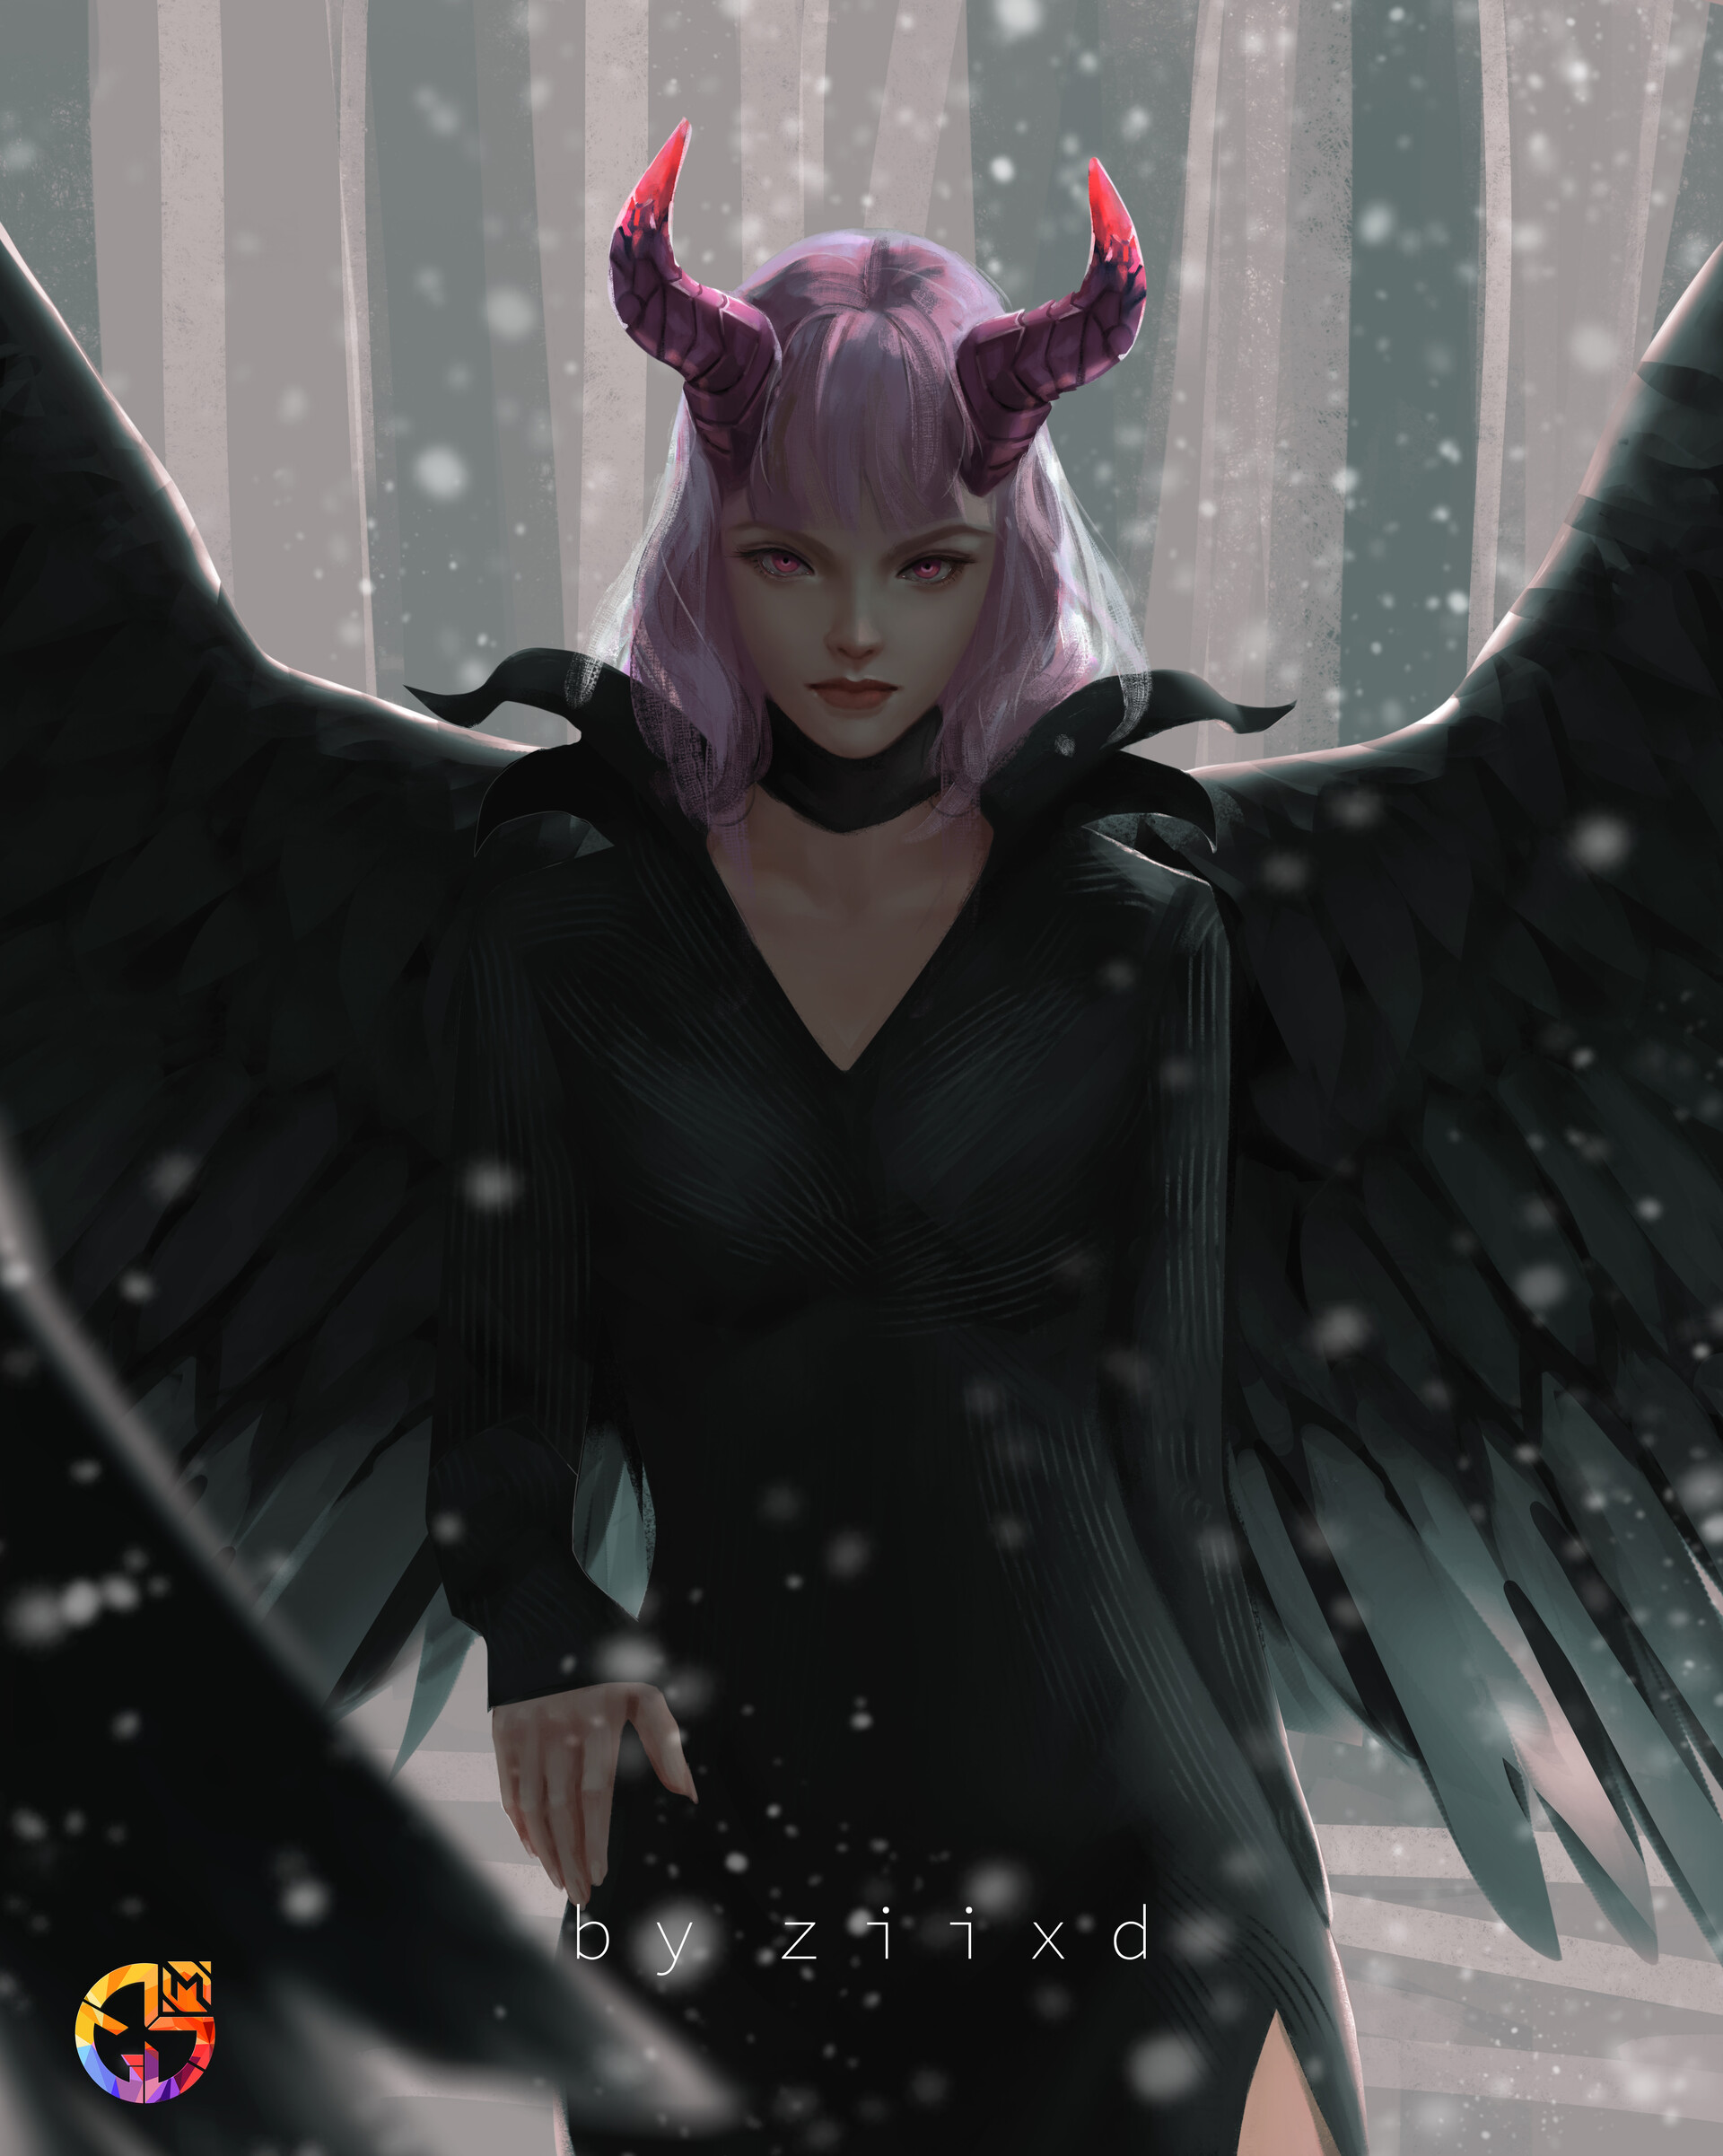 Ziixd Digital Art Digital Painting Artwork Pink Hair Black Clothing Wings Black Wings Women Malefice 1920x2402